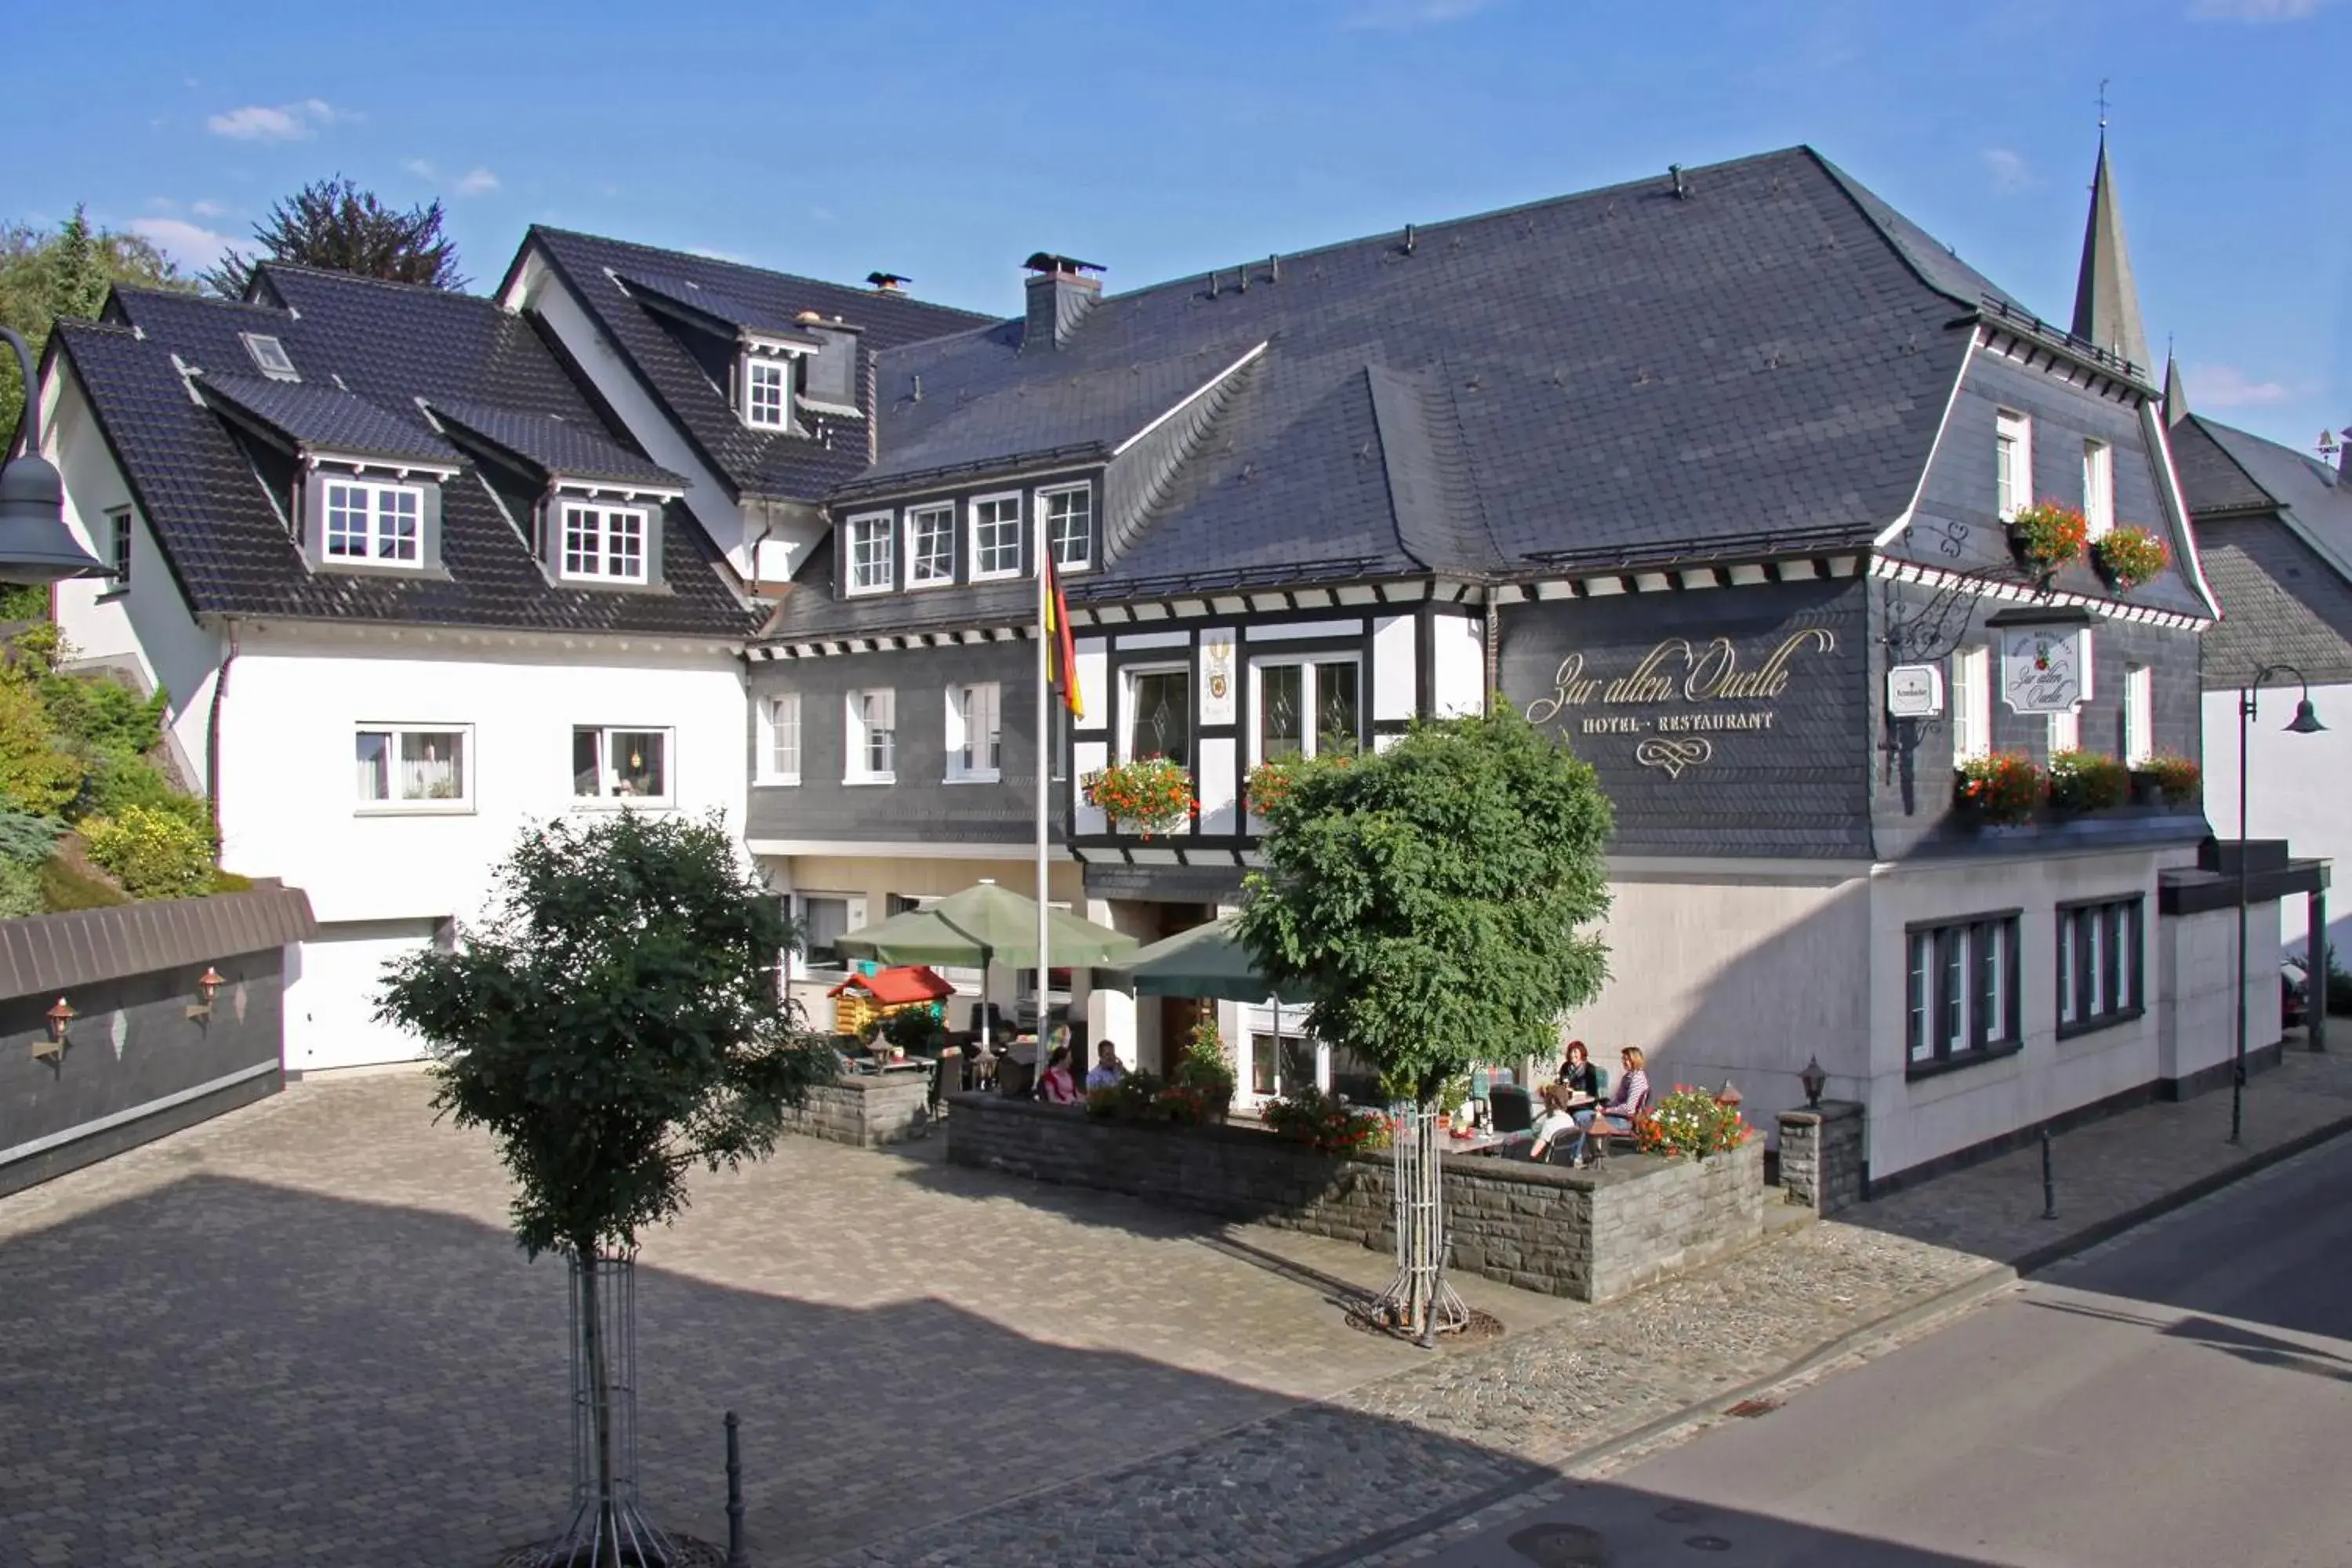 Property Building in Zur alten Quelle